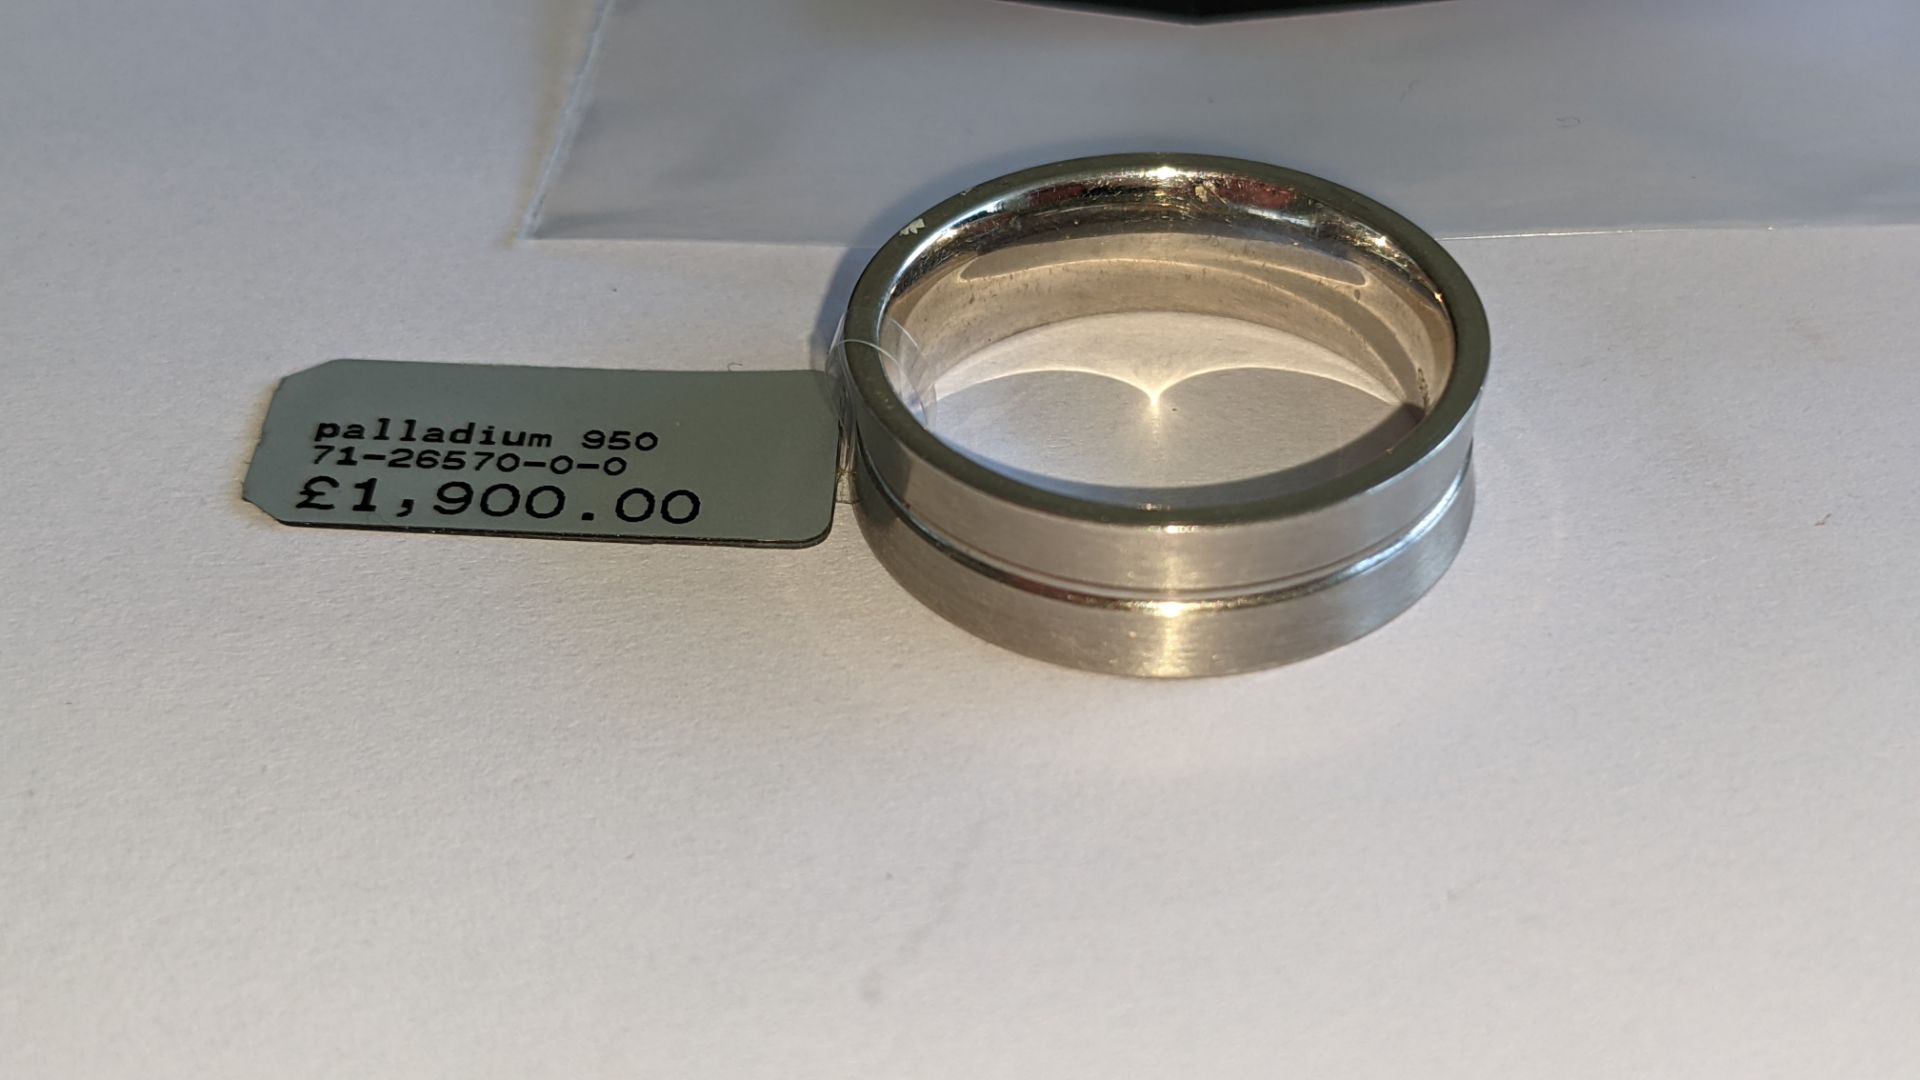 Palladium 950 7mm concave ring. RRP £1,900 - Image 4 of 16